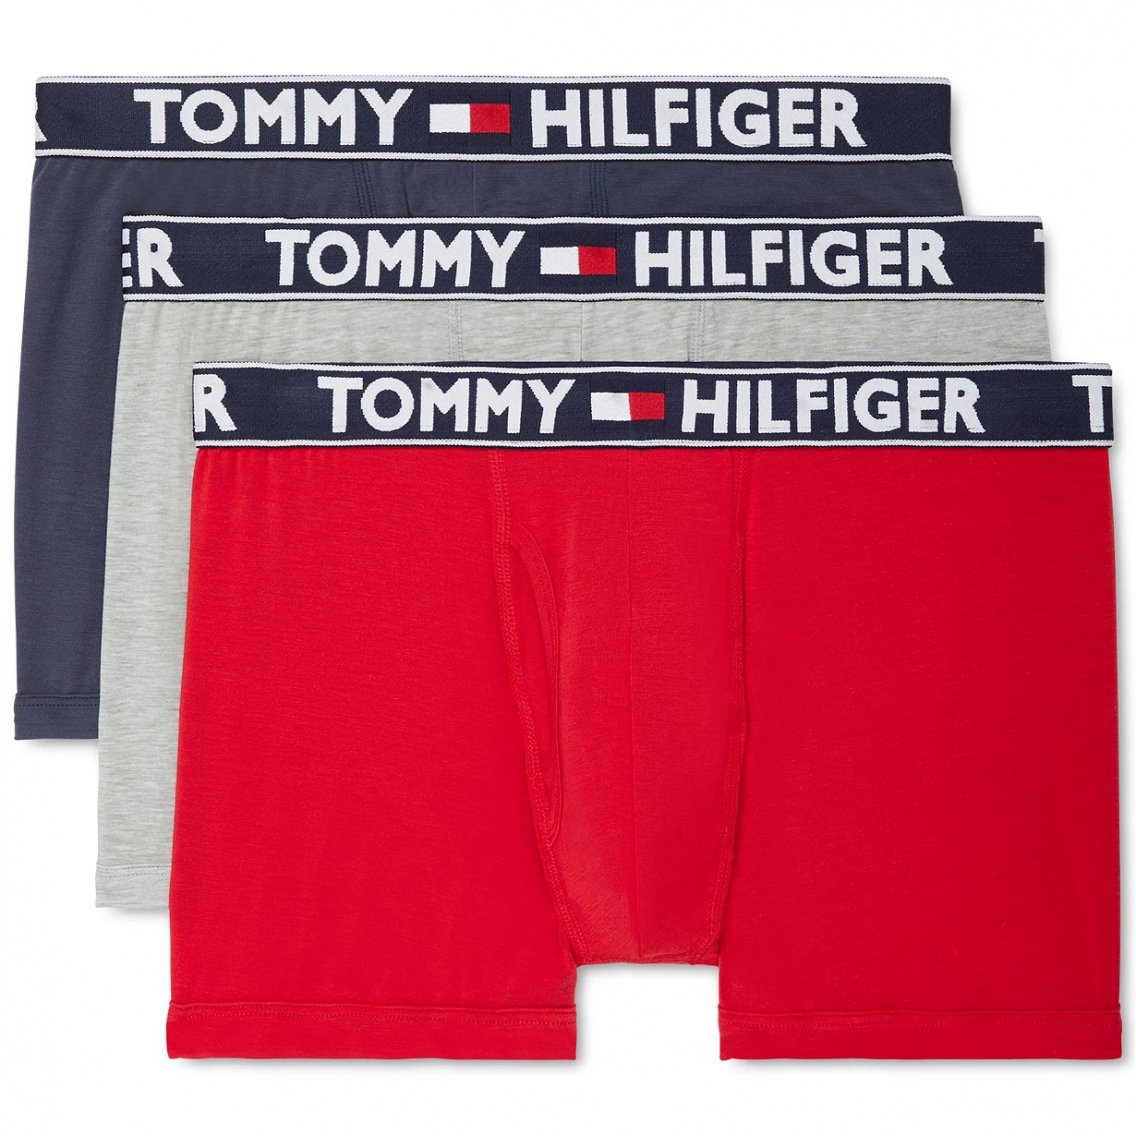 TOMMY HILFIGER(トミーヒルフィガー)[09T4071-608]:ボクサーパンツ,男性下着,インナーの通販